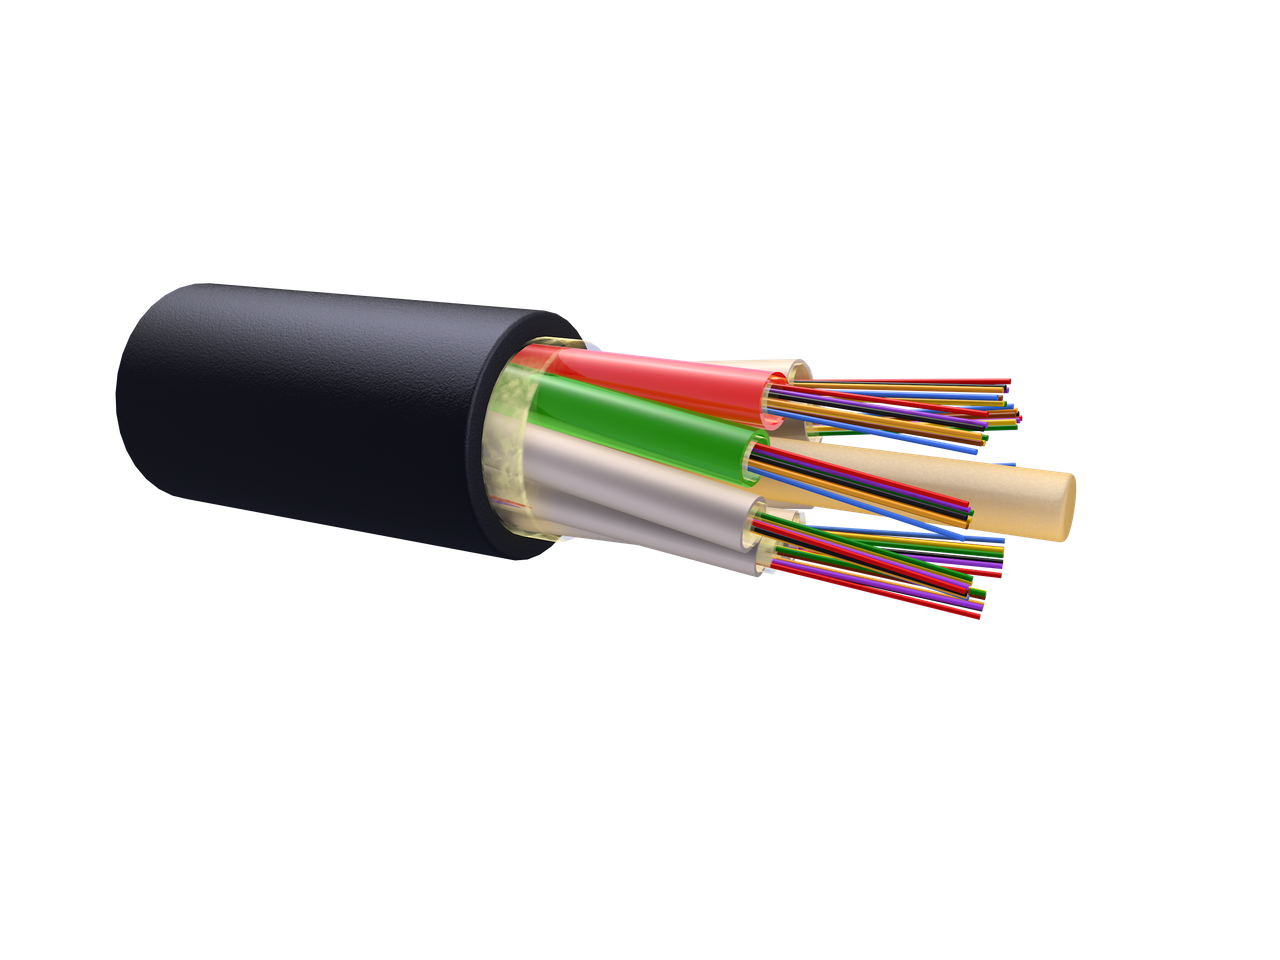 Оптический кабель для прокладки в пластмассовый трубопровод ОК-М6П-А36-2.7 (волокно Corning США)